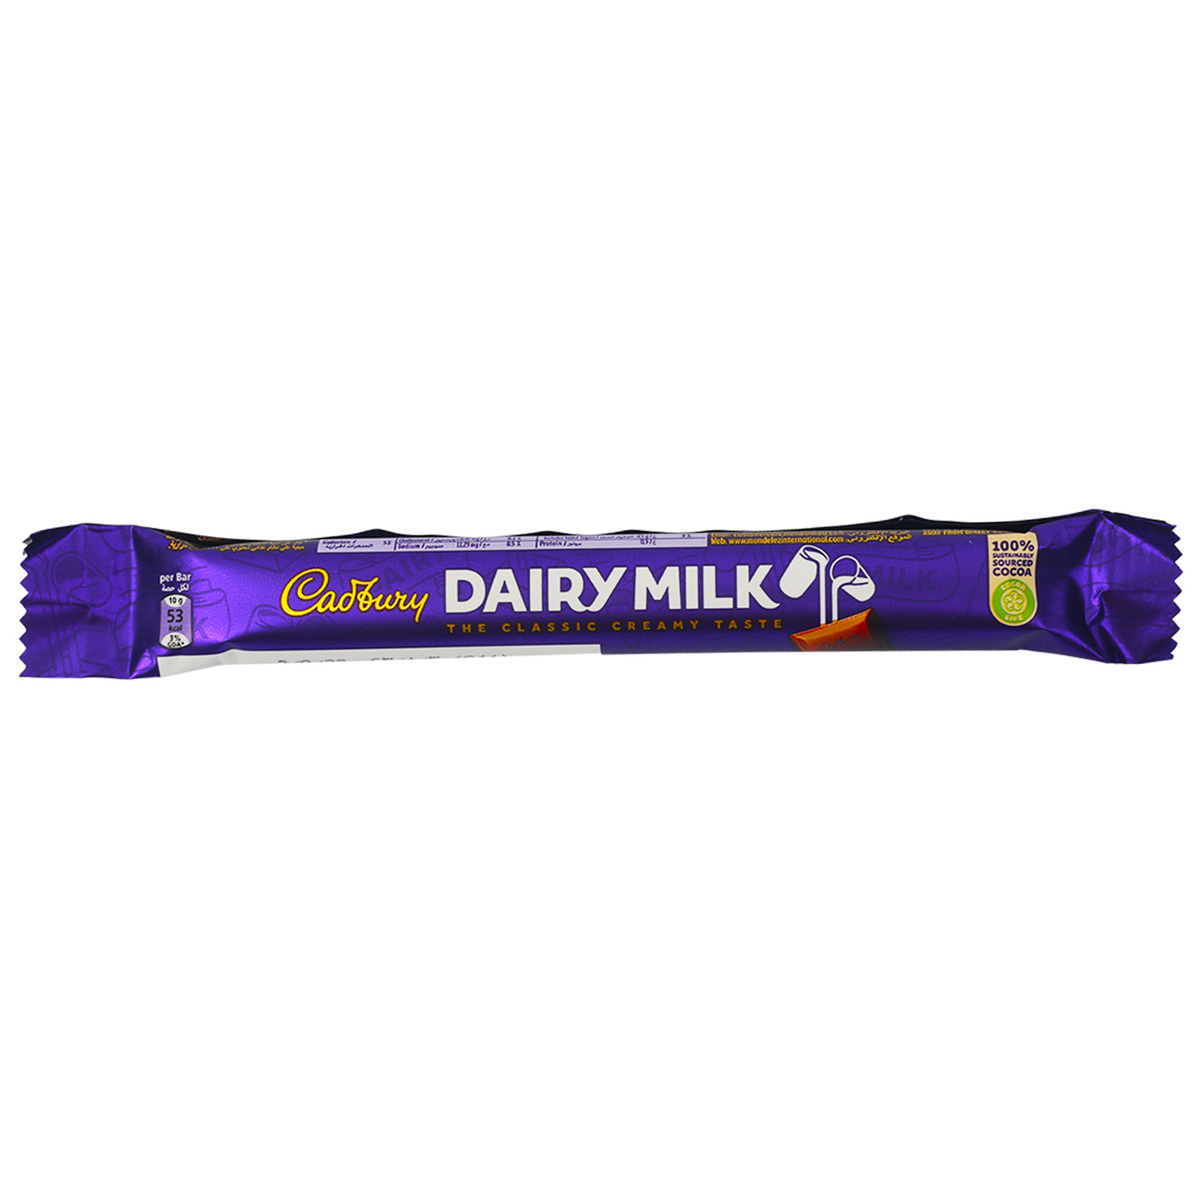 Cadbury Dairy Milk 24 x 10 g